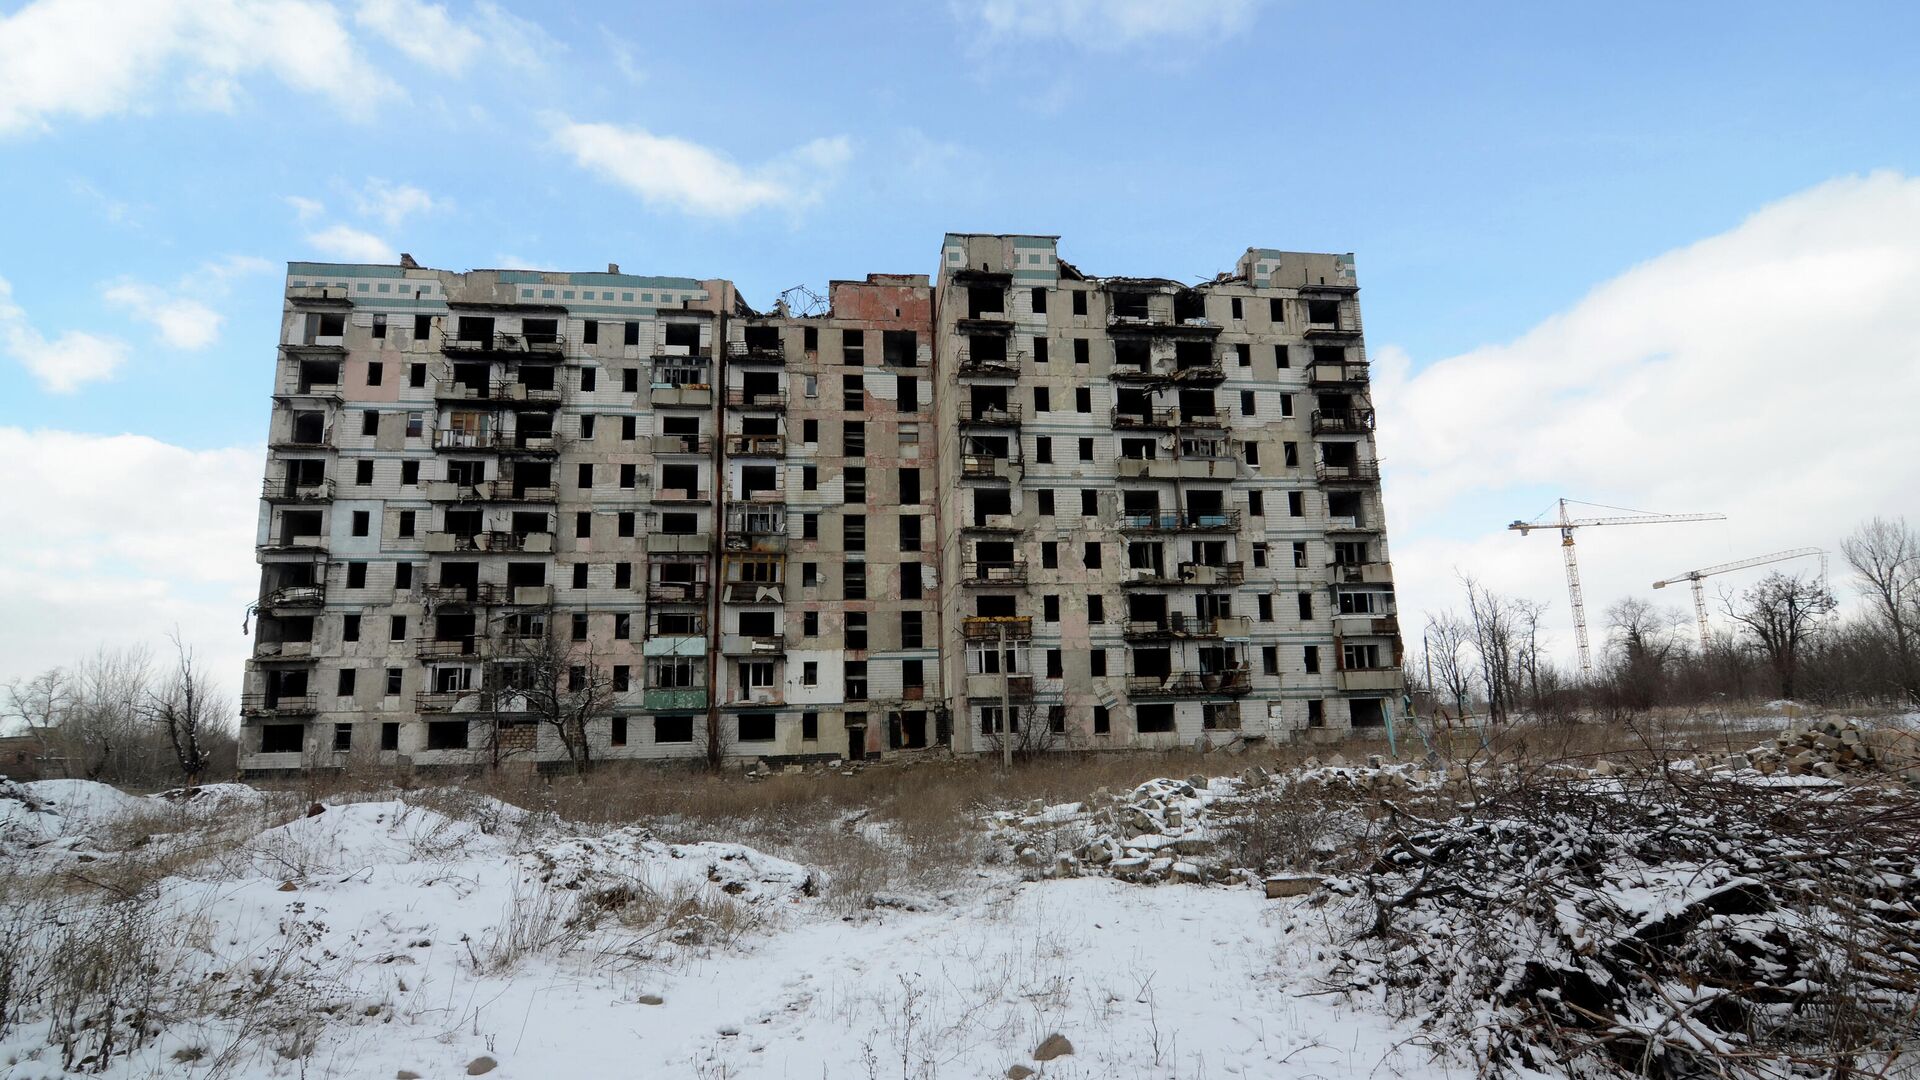 Дом на улице Взлетной в Донецке, разрушенный в ходе боевых действий в 2014-2015 годы - РИА Новости, 1920, 04.04.2021